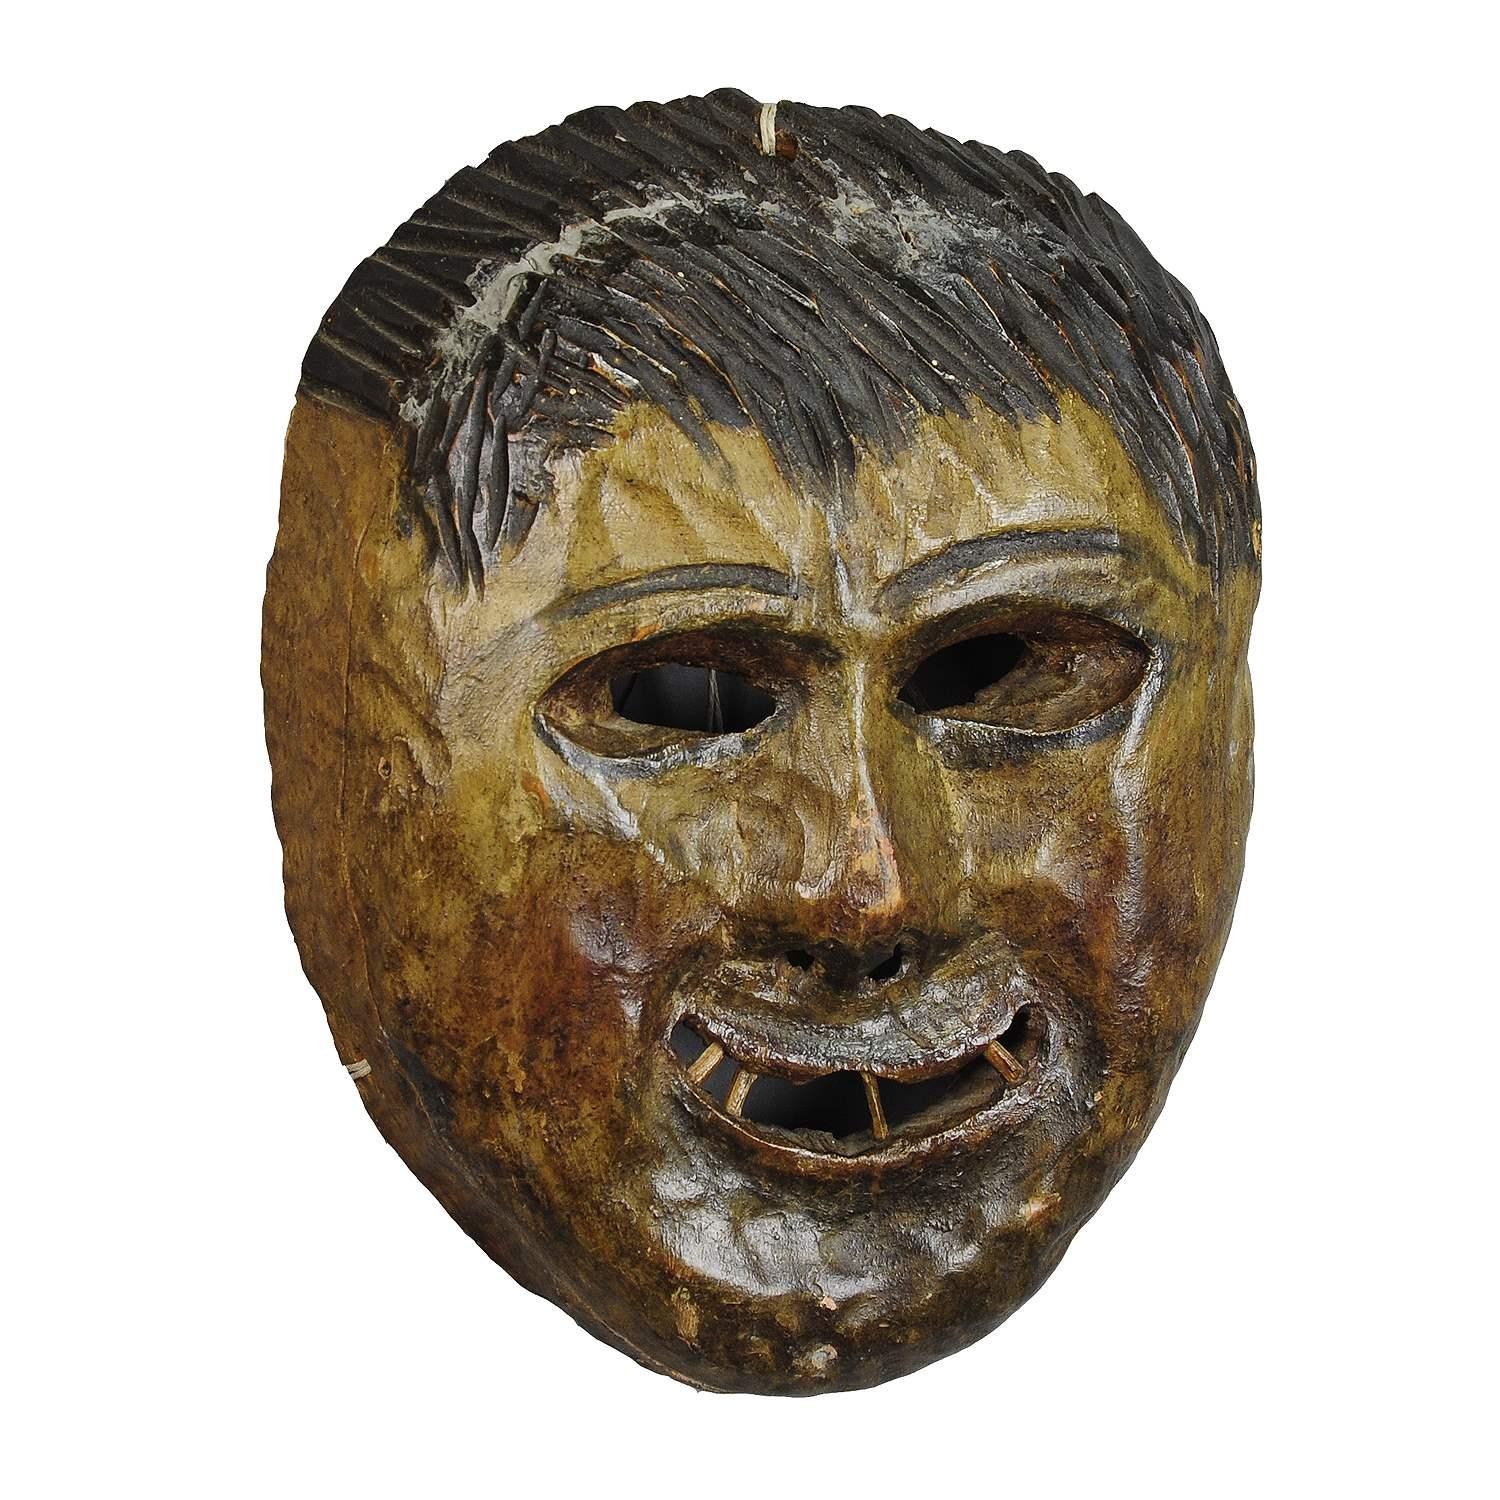 Folksy Masque de carnaval tyrolien Fasnet sculpté à la main

Masque de carnaval folklorique en bois sculpté de la région du Tyrol du Sud. Ces masques sont utilisés en Autriche, en Allemagne du Sud et en Italie lors des activités du carnaval